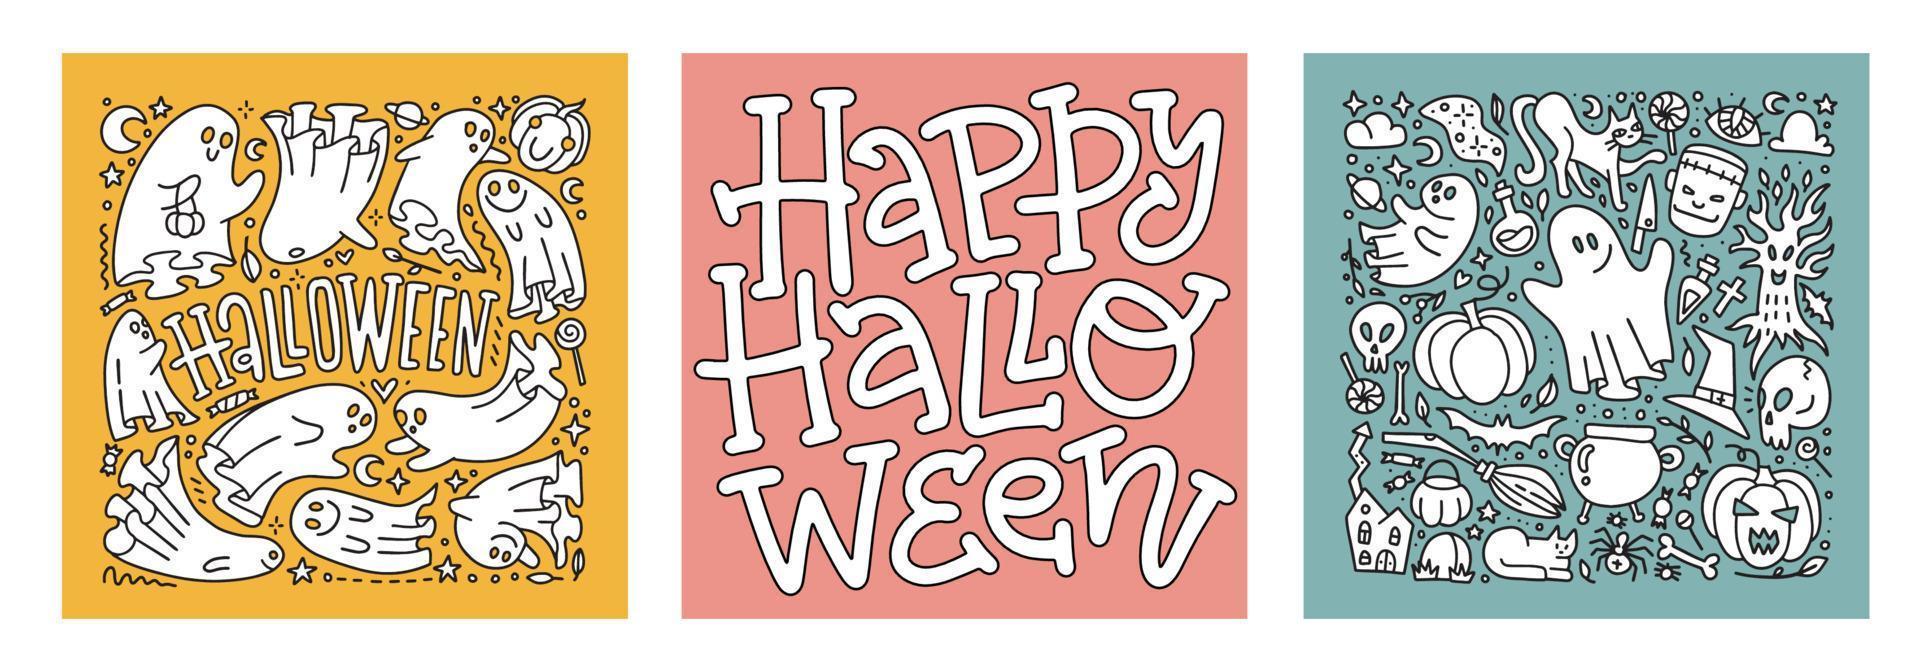 conjunto de cartões de letras de doodle de halloween com personagens fantasmas. monstros assustadores assustadores, fantasmas boo mortos e boohoo engraçado fofo fantasma de diabo curioso de mosca em traje. ilustração vetorial linear. vetor